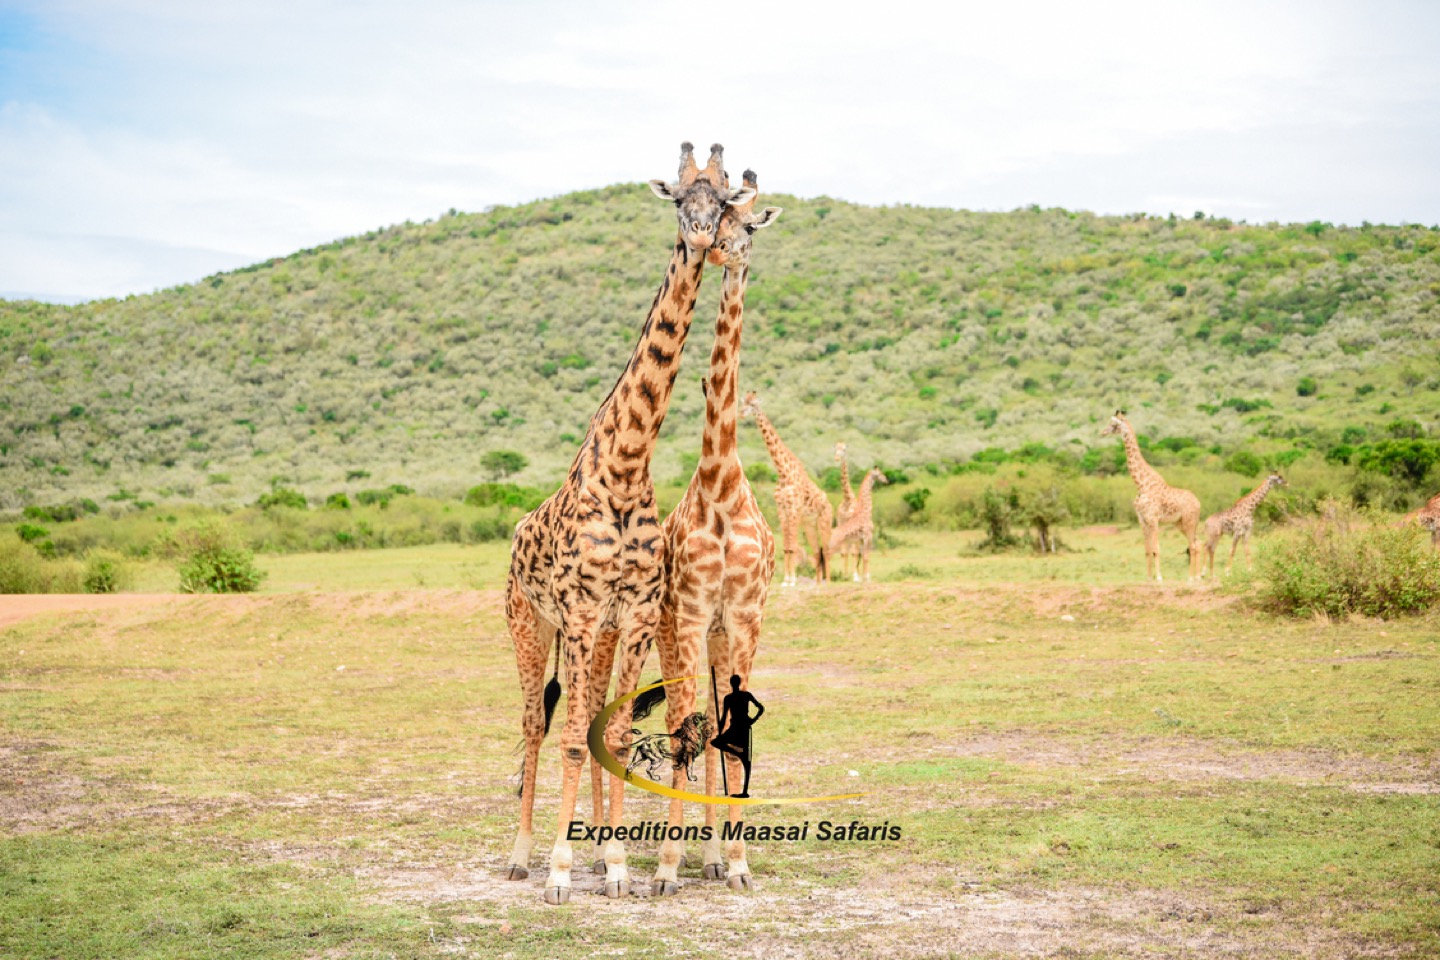 Giraffes at the Masai Mara